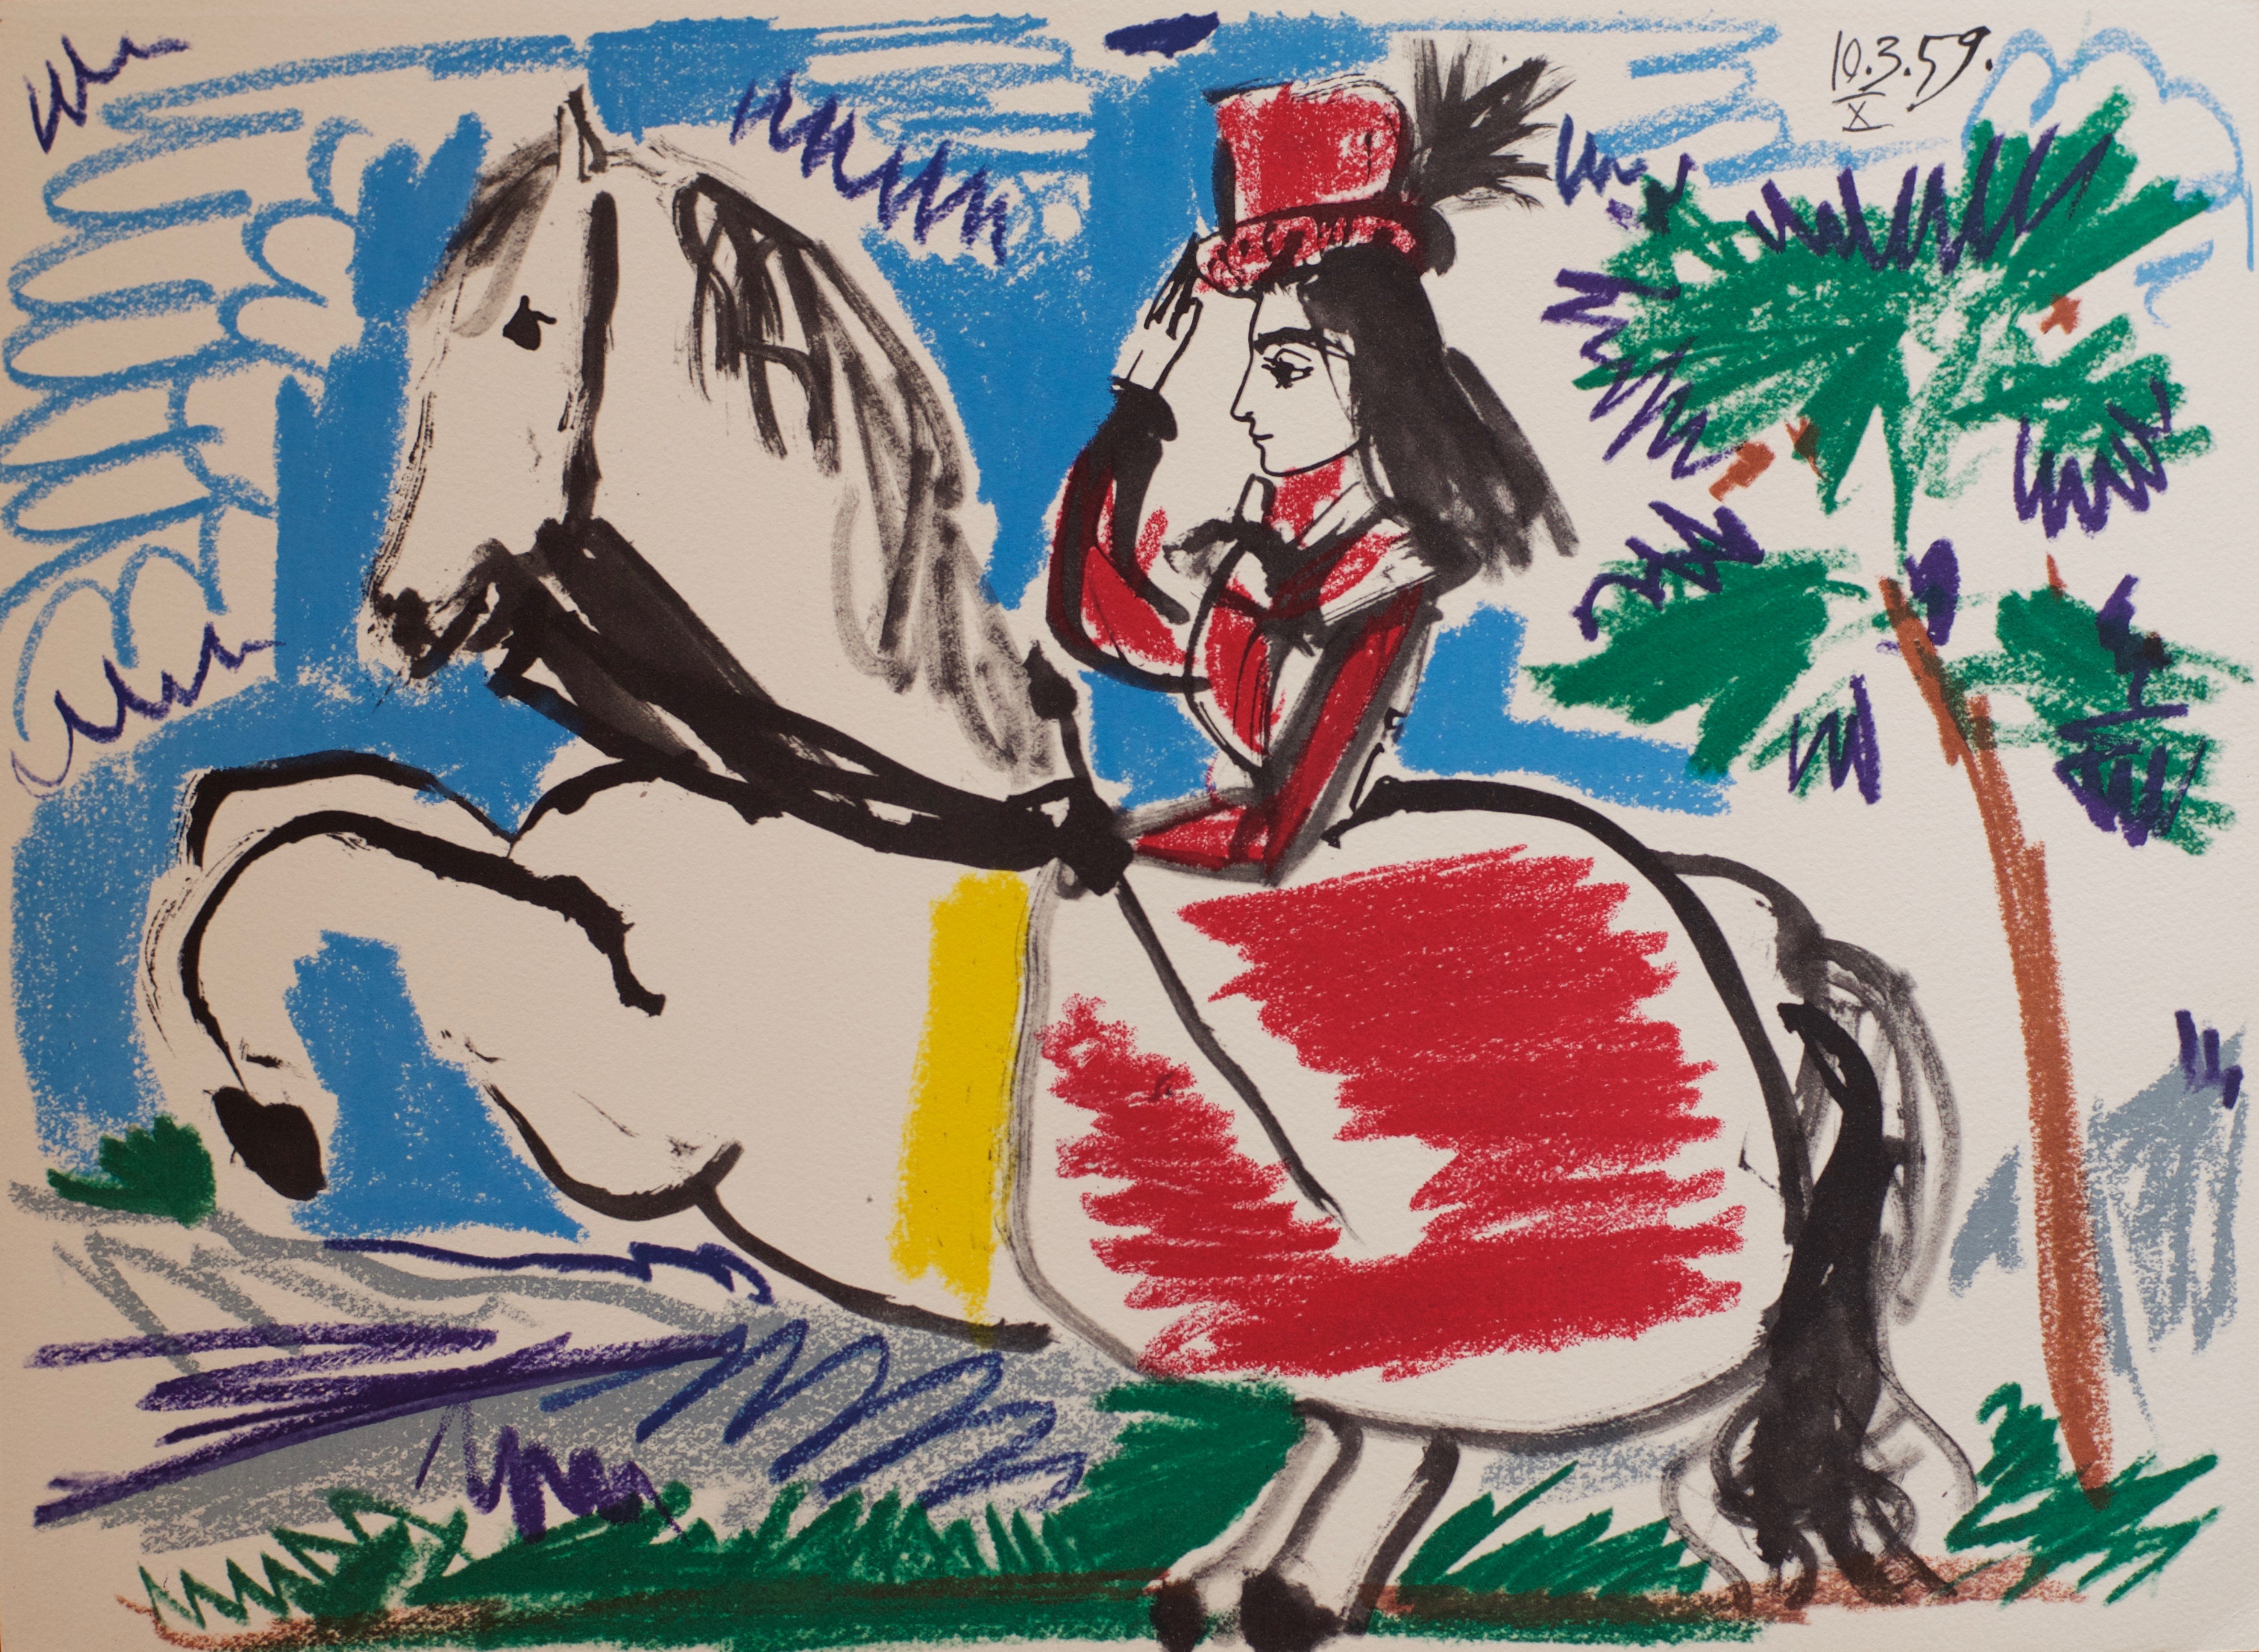 Mostre, 35mila visitatori per "Picasso è Noto" e "Frida Khalo"